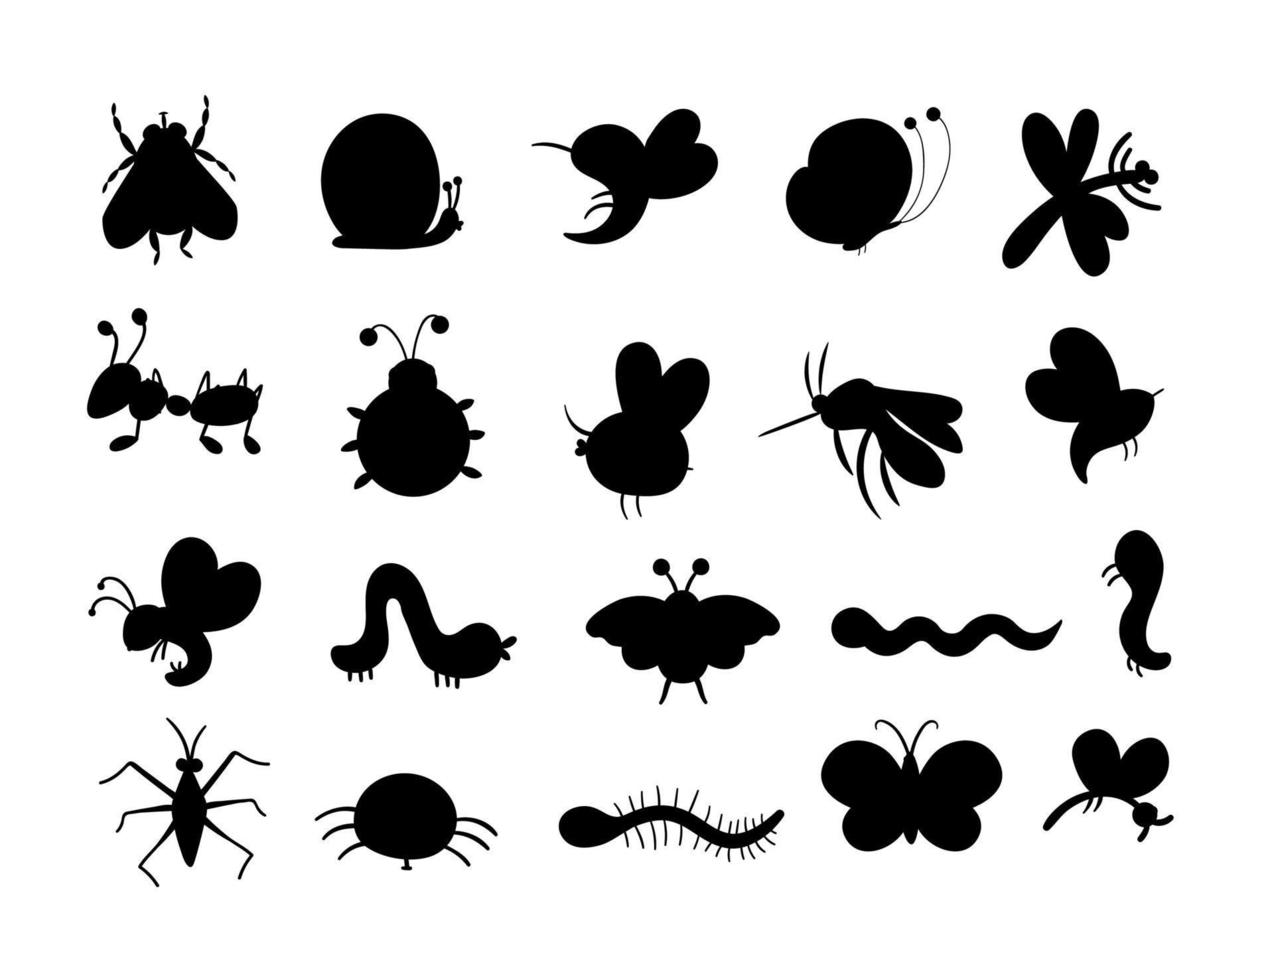 conjunto de siluetas de insectos planos dibujados a mano de vector. colección de bichos divertidos. linda ilustración de bosque con mariposas, abejas, orugas para diseño de niños, impresión, papelería vector